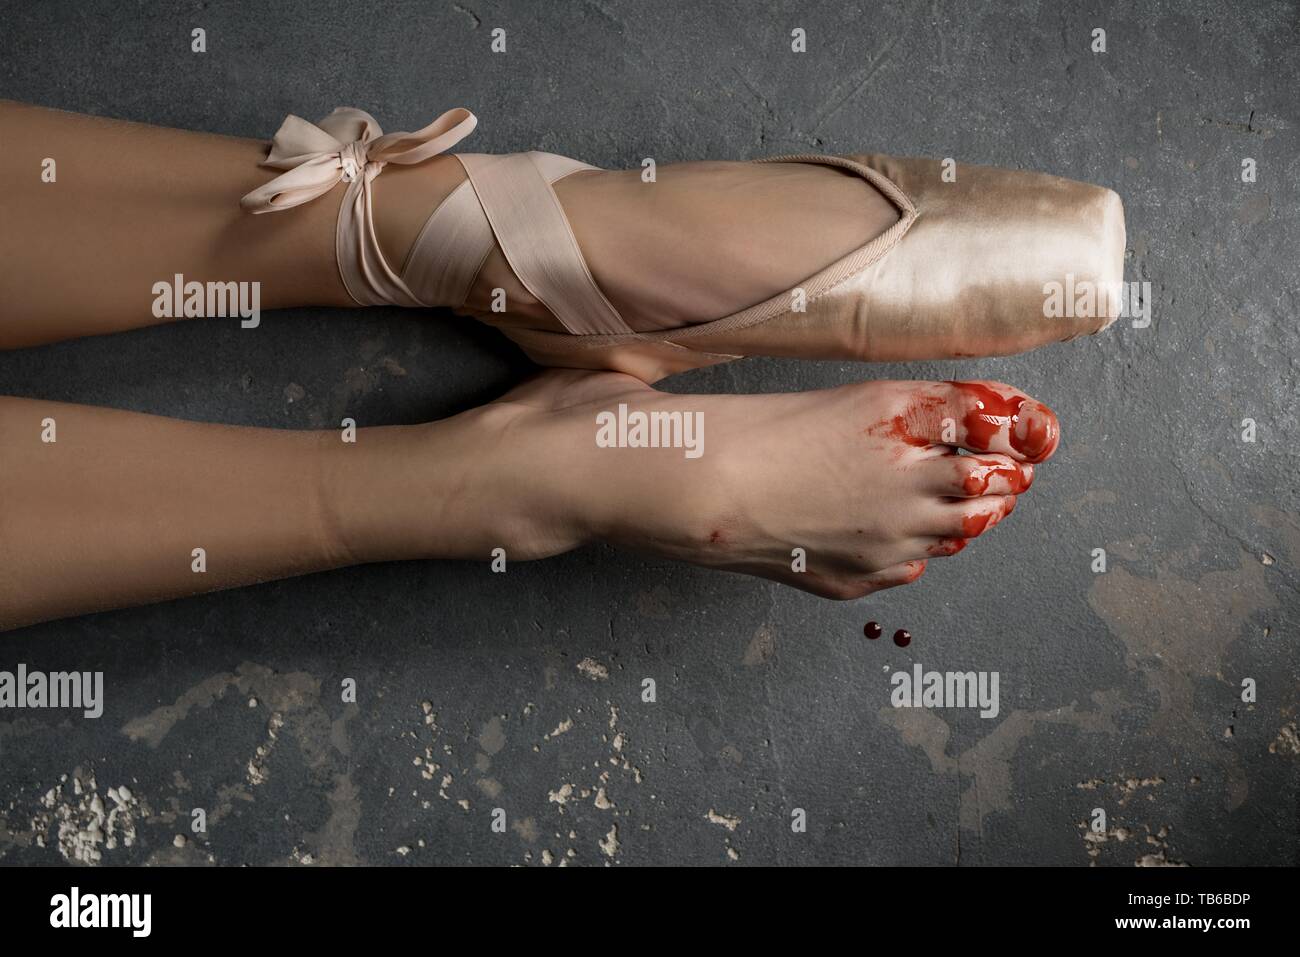 Damaged bloody legs of ballerina Stock Photo